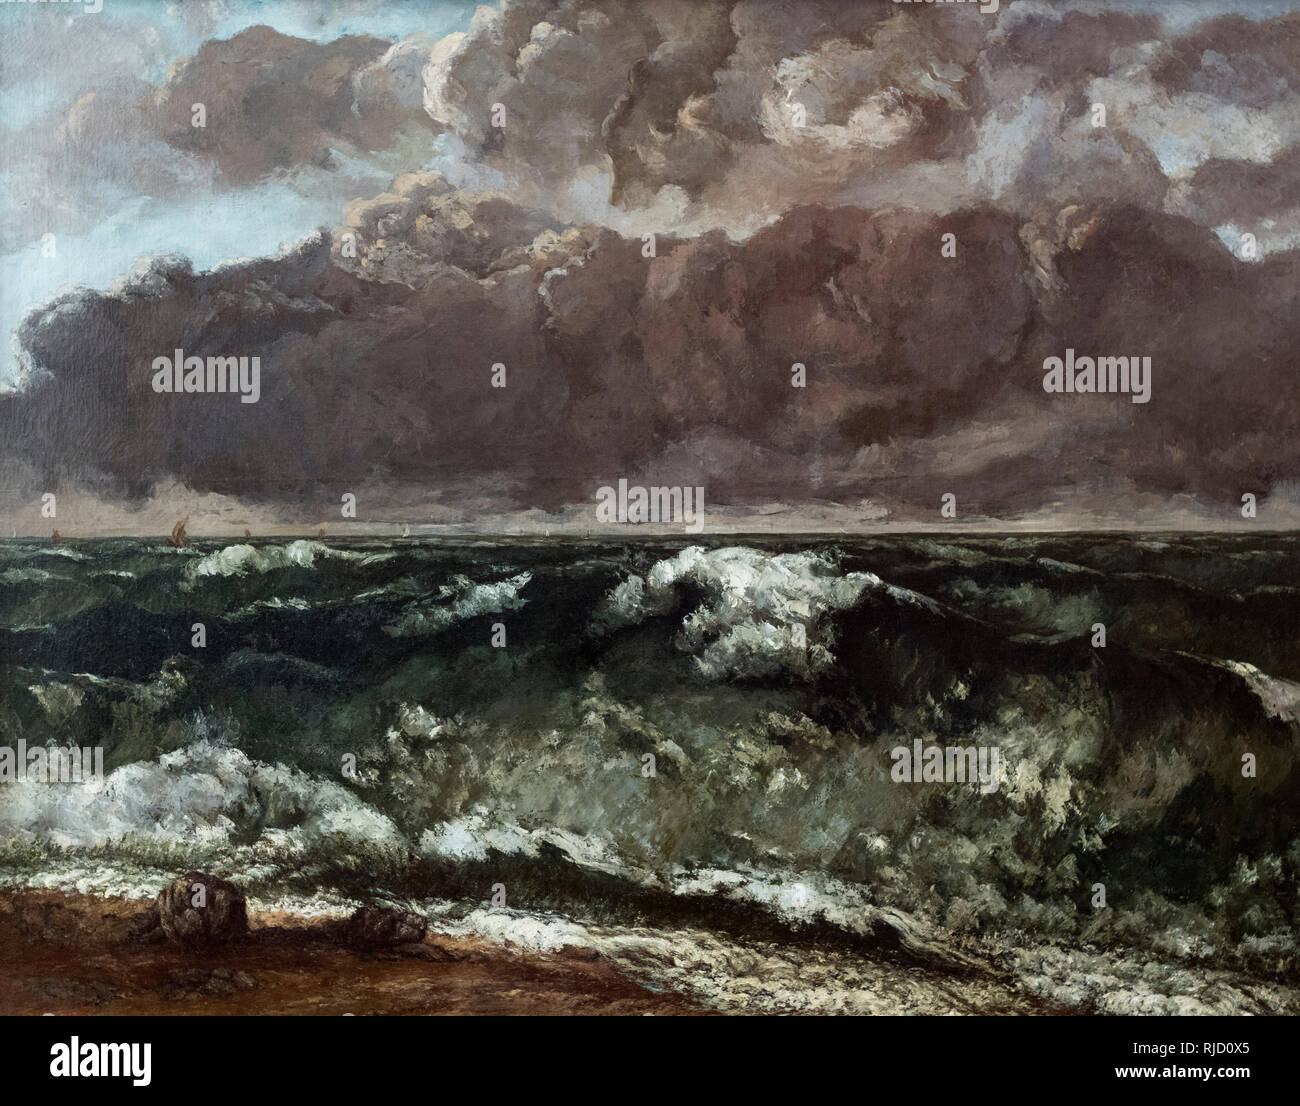 Gustave Courbet (1819-1877), la ola, 1870. Die Welle. Alte Nationalgalerie, Berlín. Foto de stock